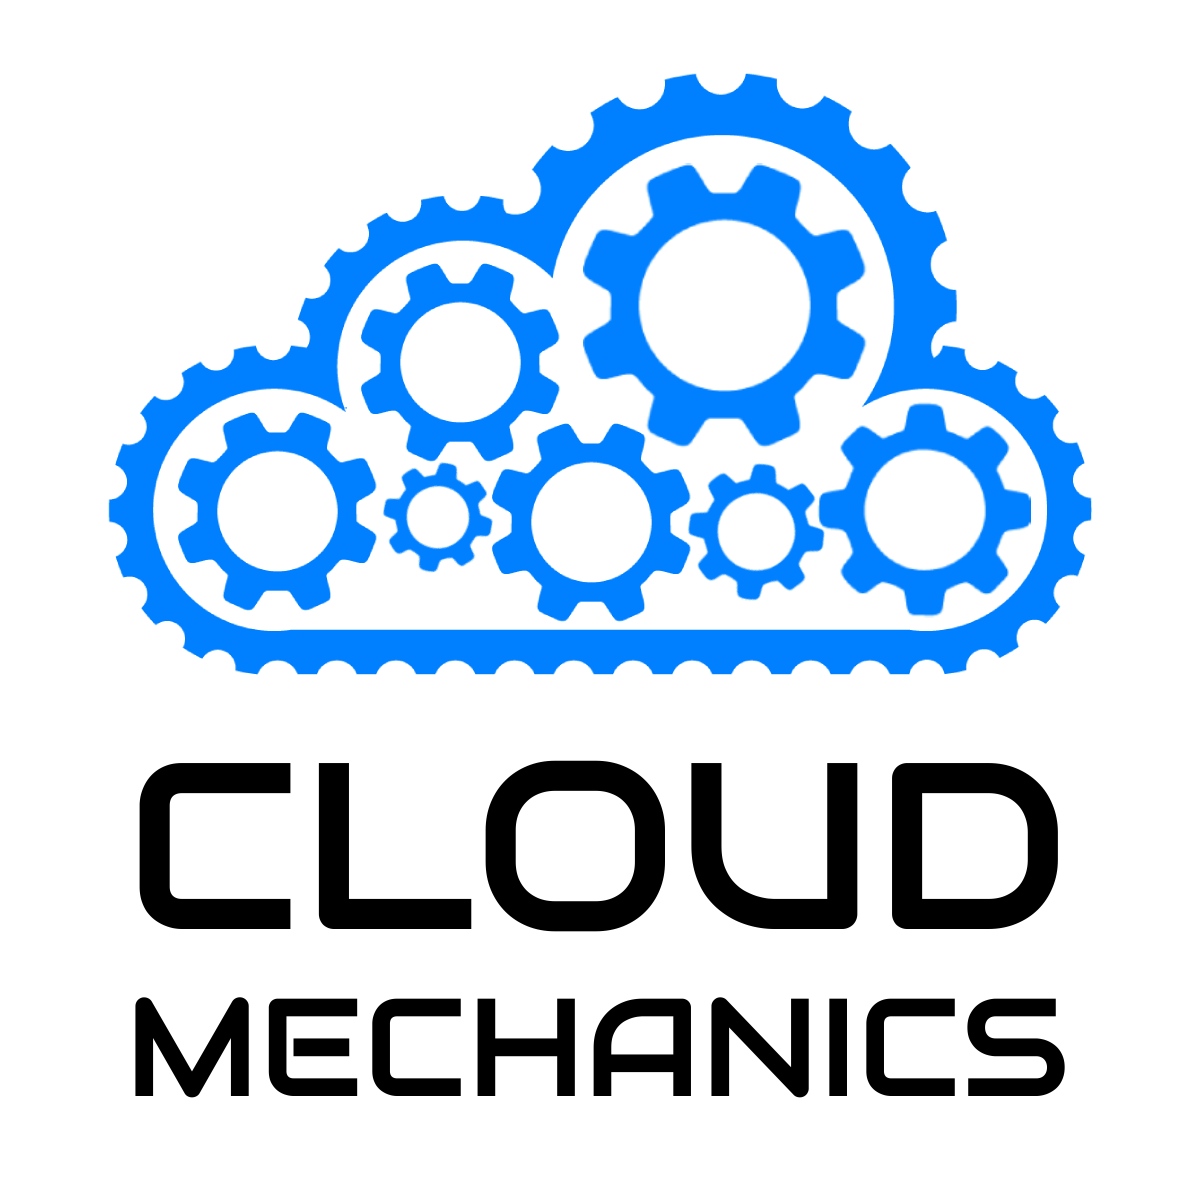 Cloud Mechanics Meetup